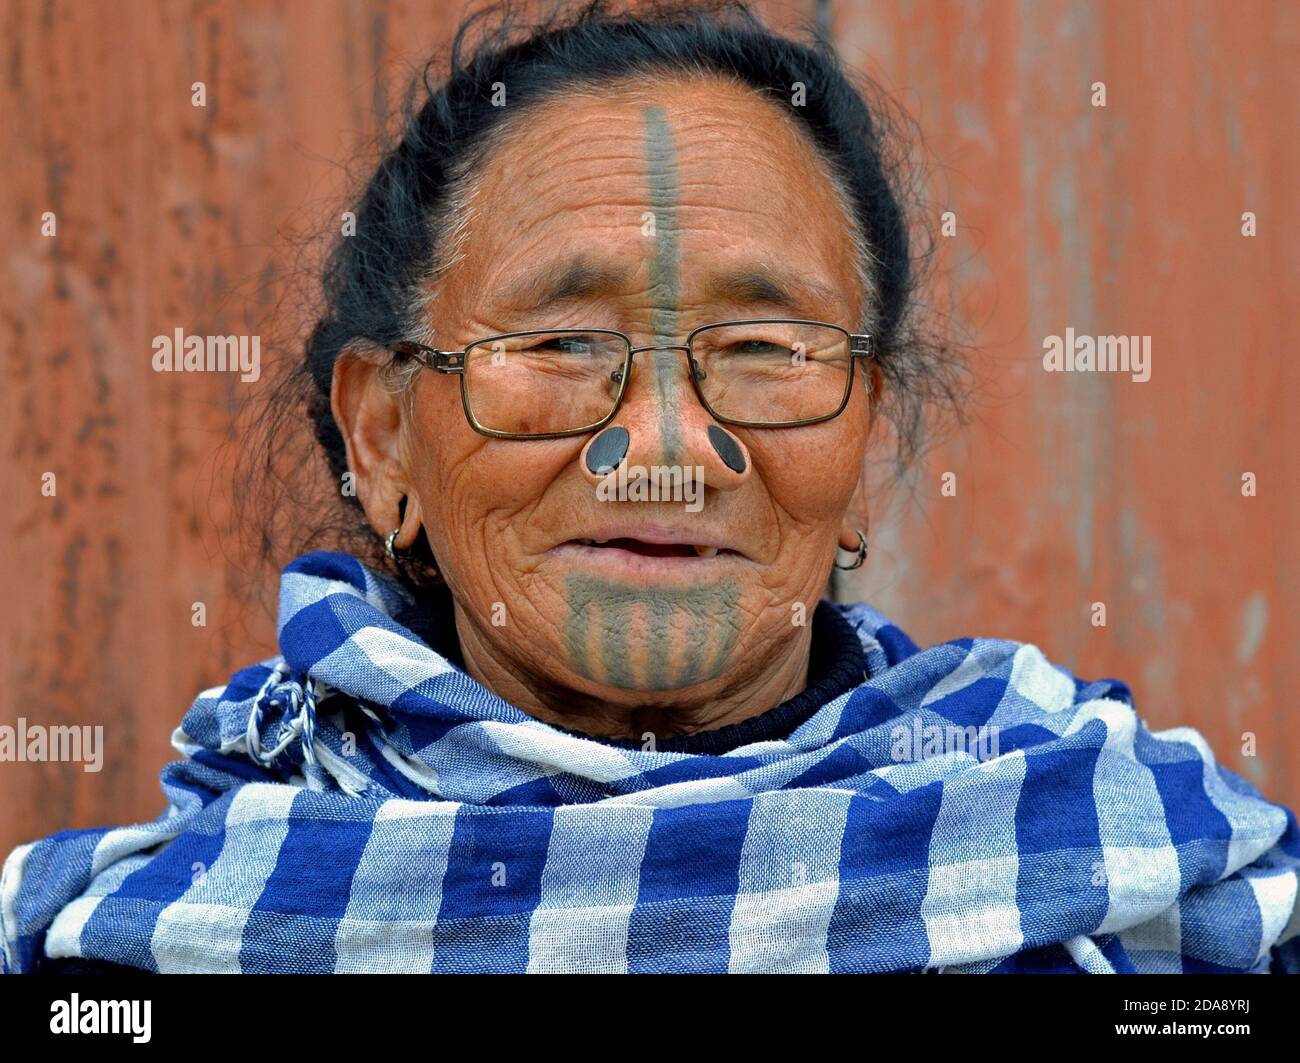 La vecchia tribale Apatani dell'India del Nord-Est con i tappi neri del naso di legno e il tatuaggio tradizionale del viso indossa gli occhiali moderni e le pose per la macchina fotografica. Foto Stock